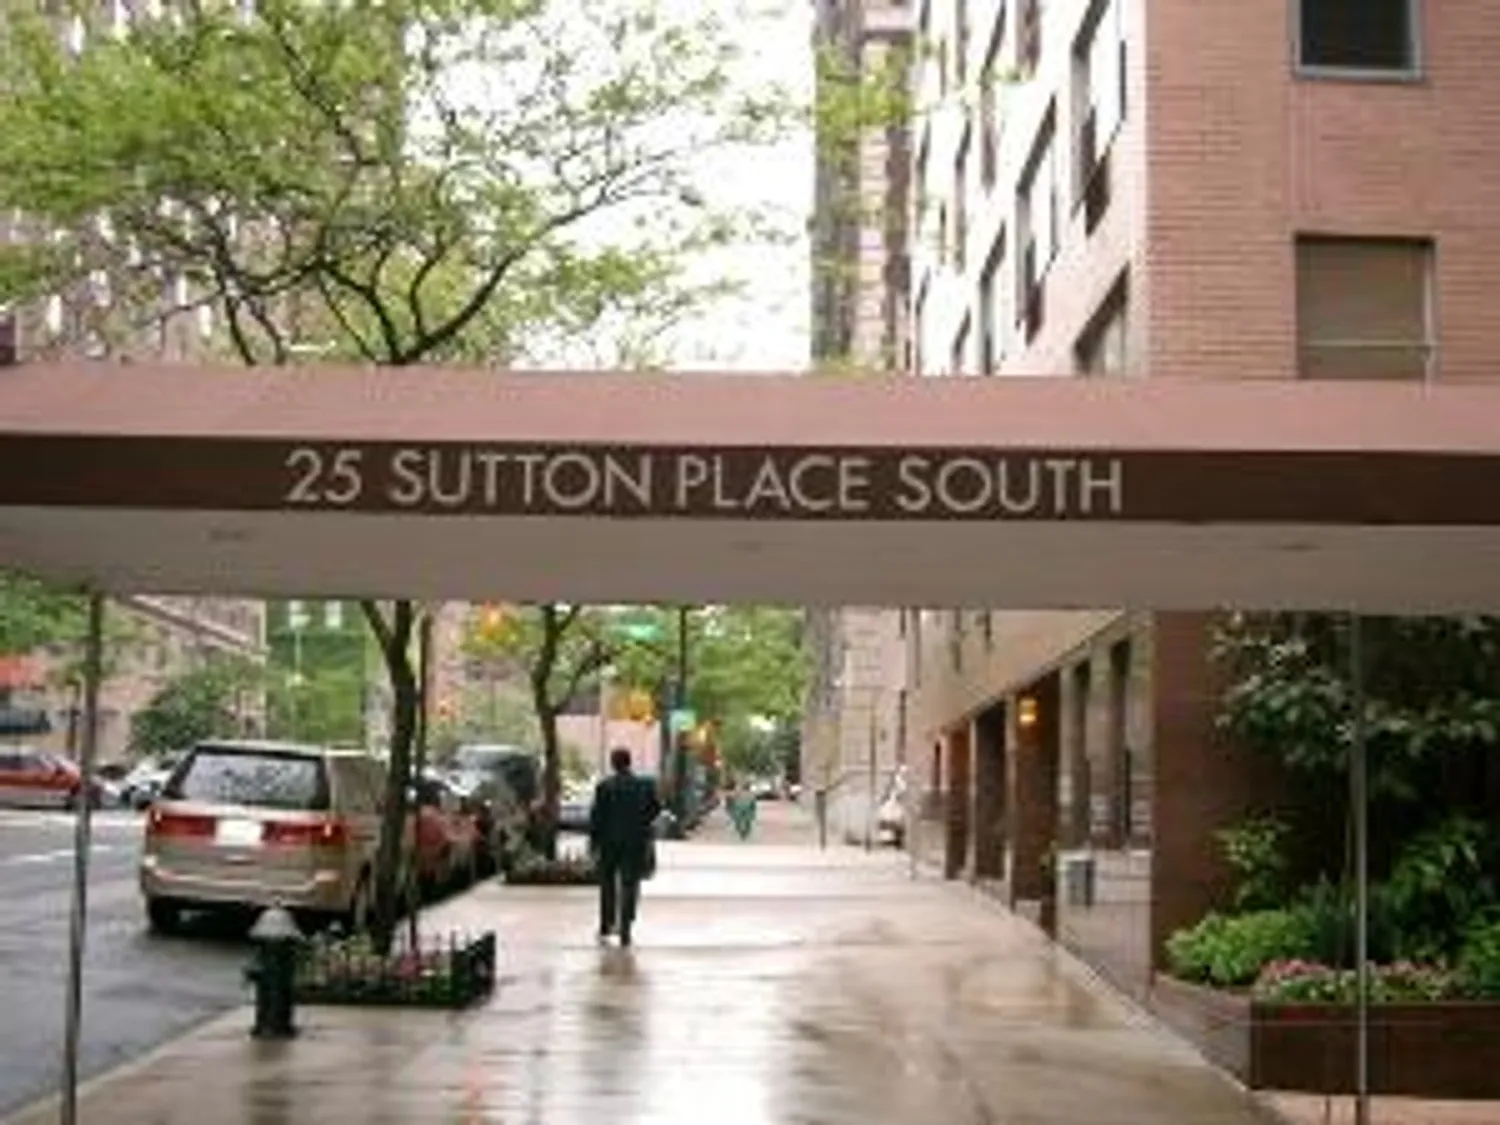 25 Sutton Place South